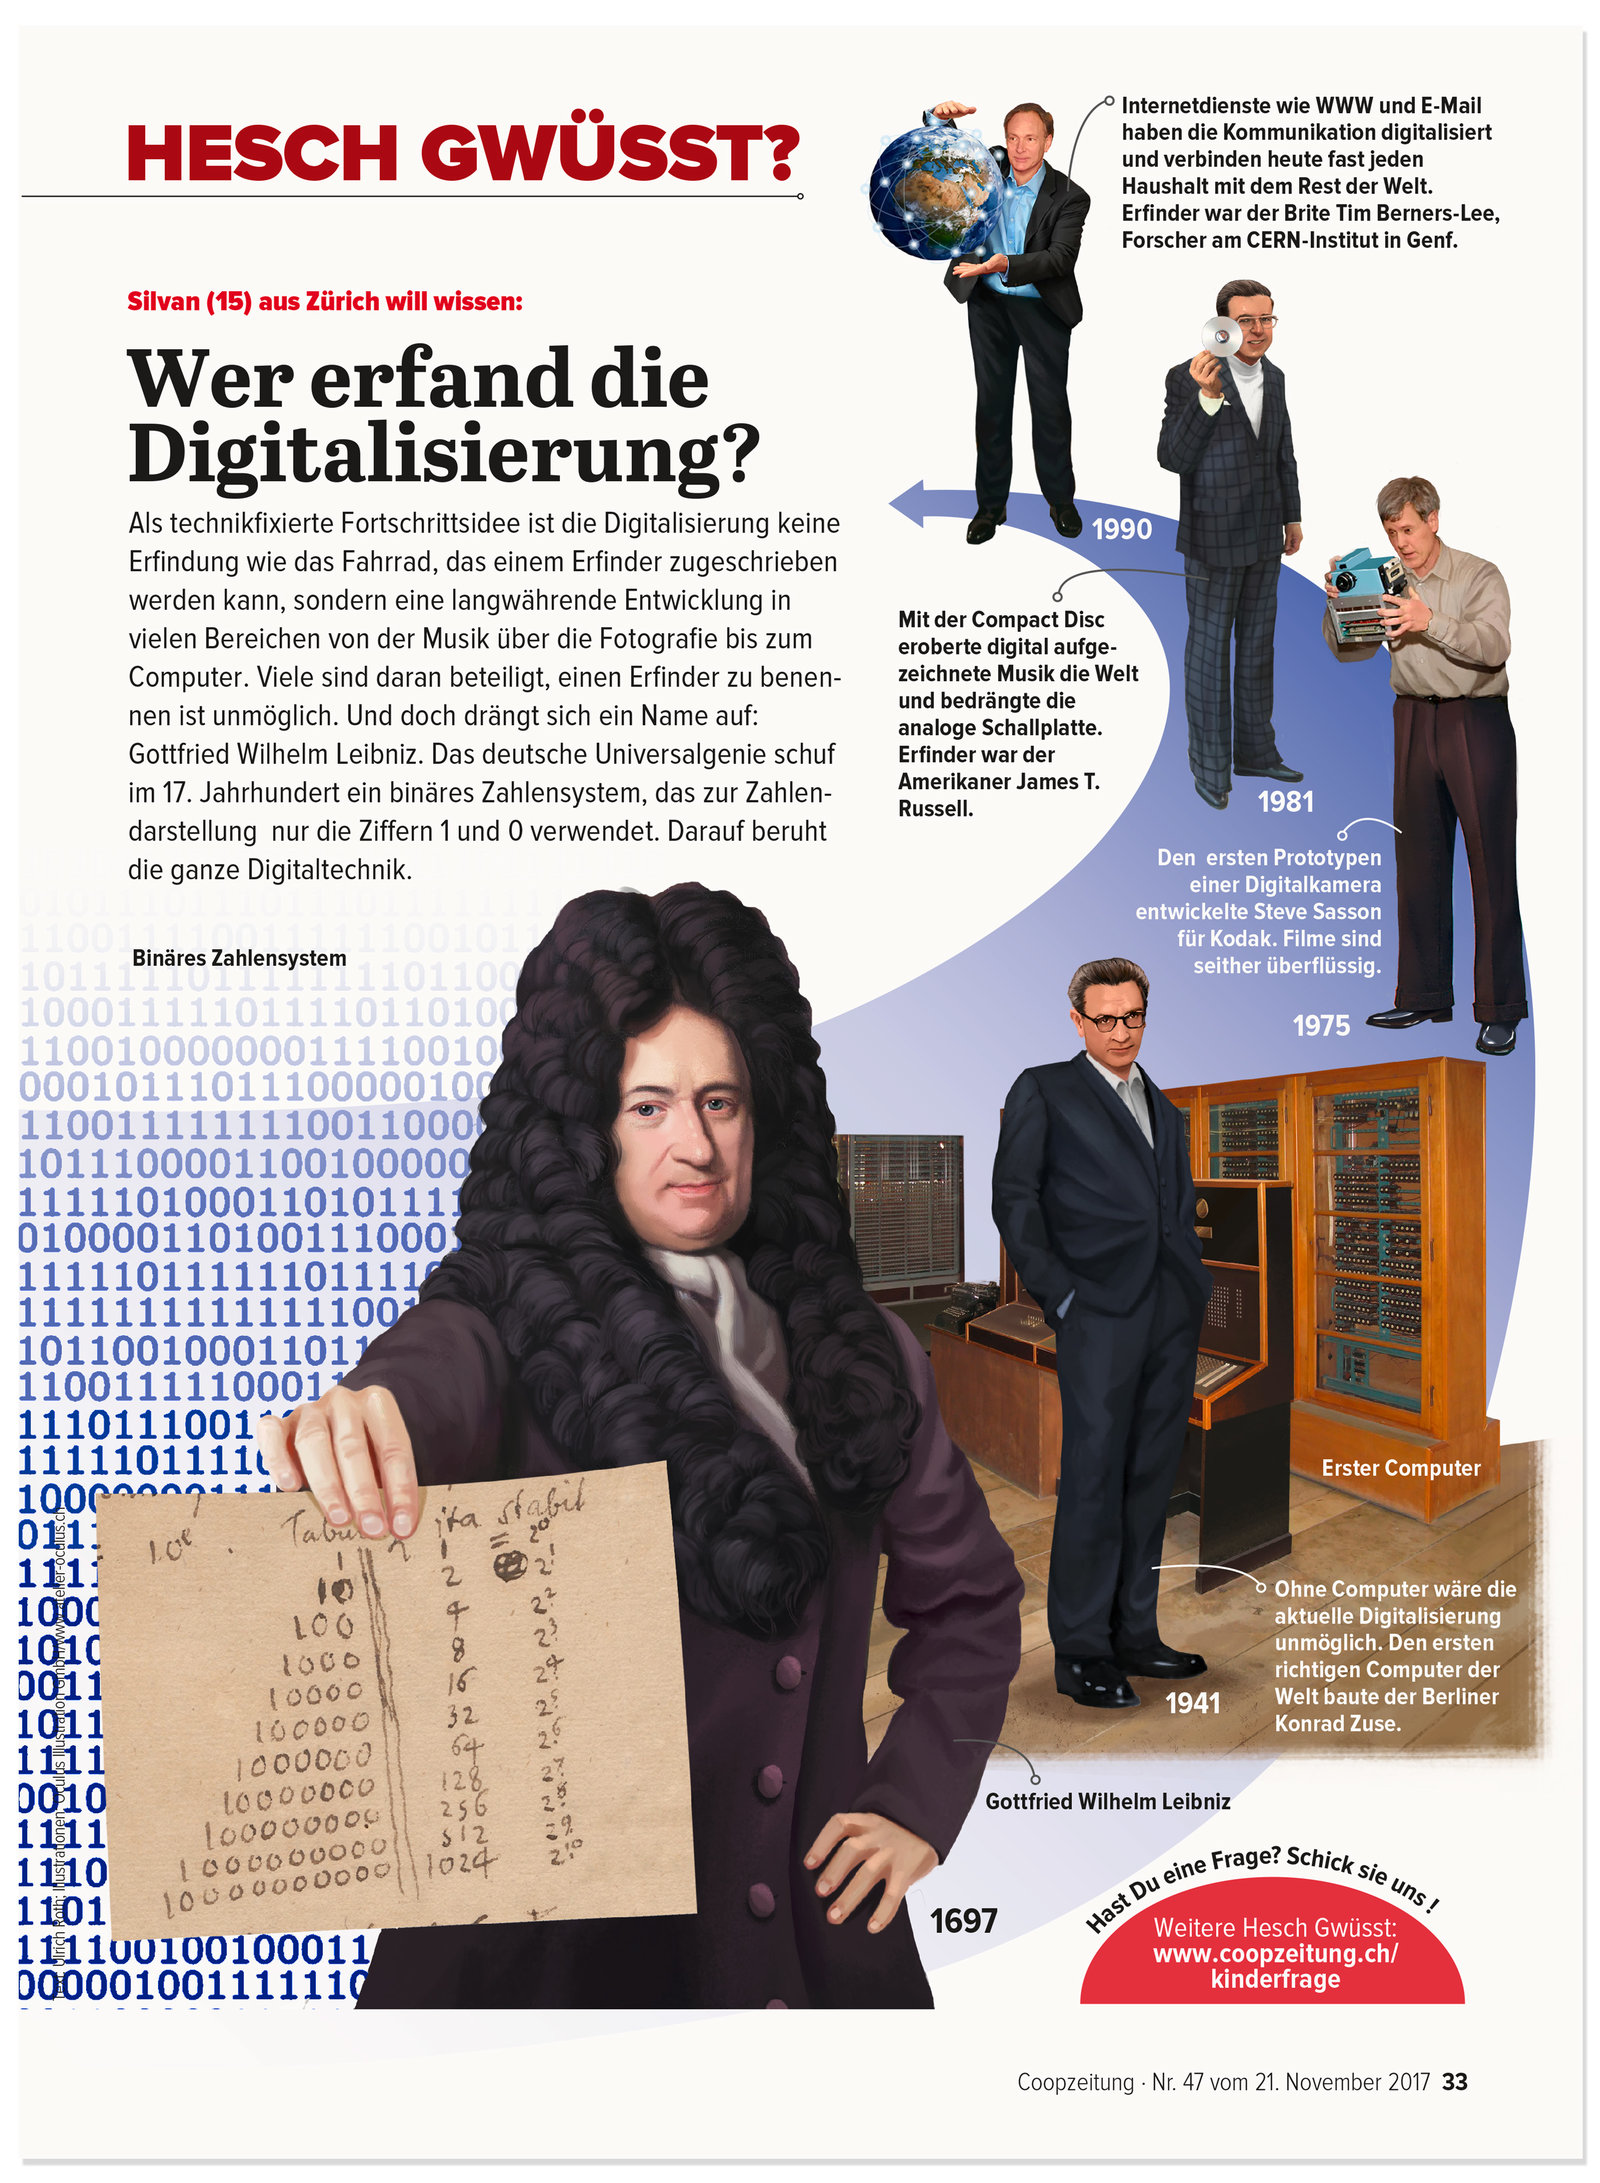 oculus-illustration-coopzeitung-hesch-gwuesst-digitalisierung